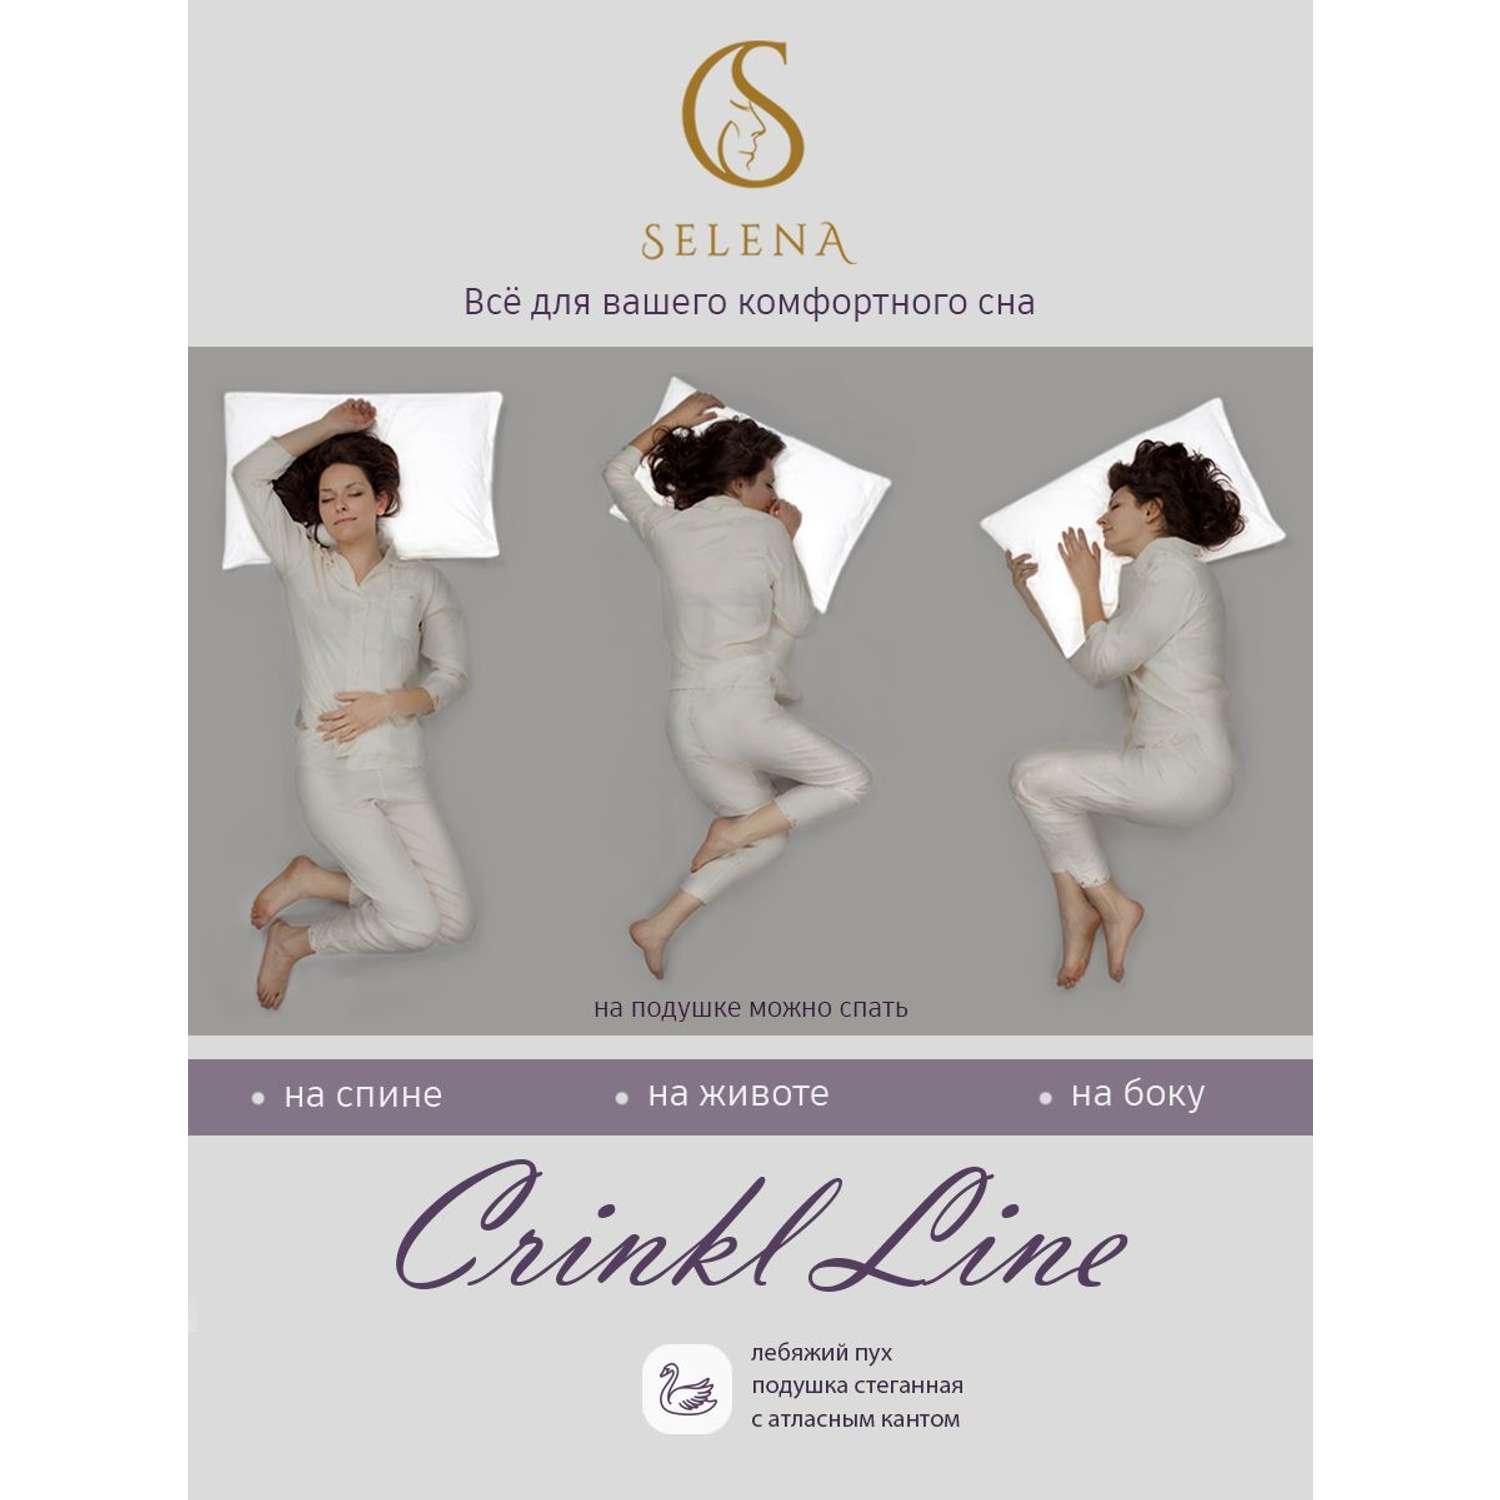 Одеяло Selena Crinkle line 2-х спальное 172х205 см белое наполнитель Лебяжий пух - фото 8